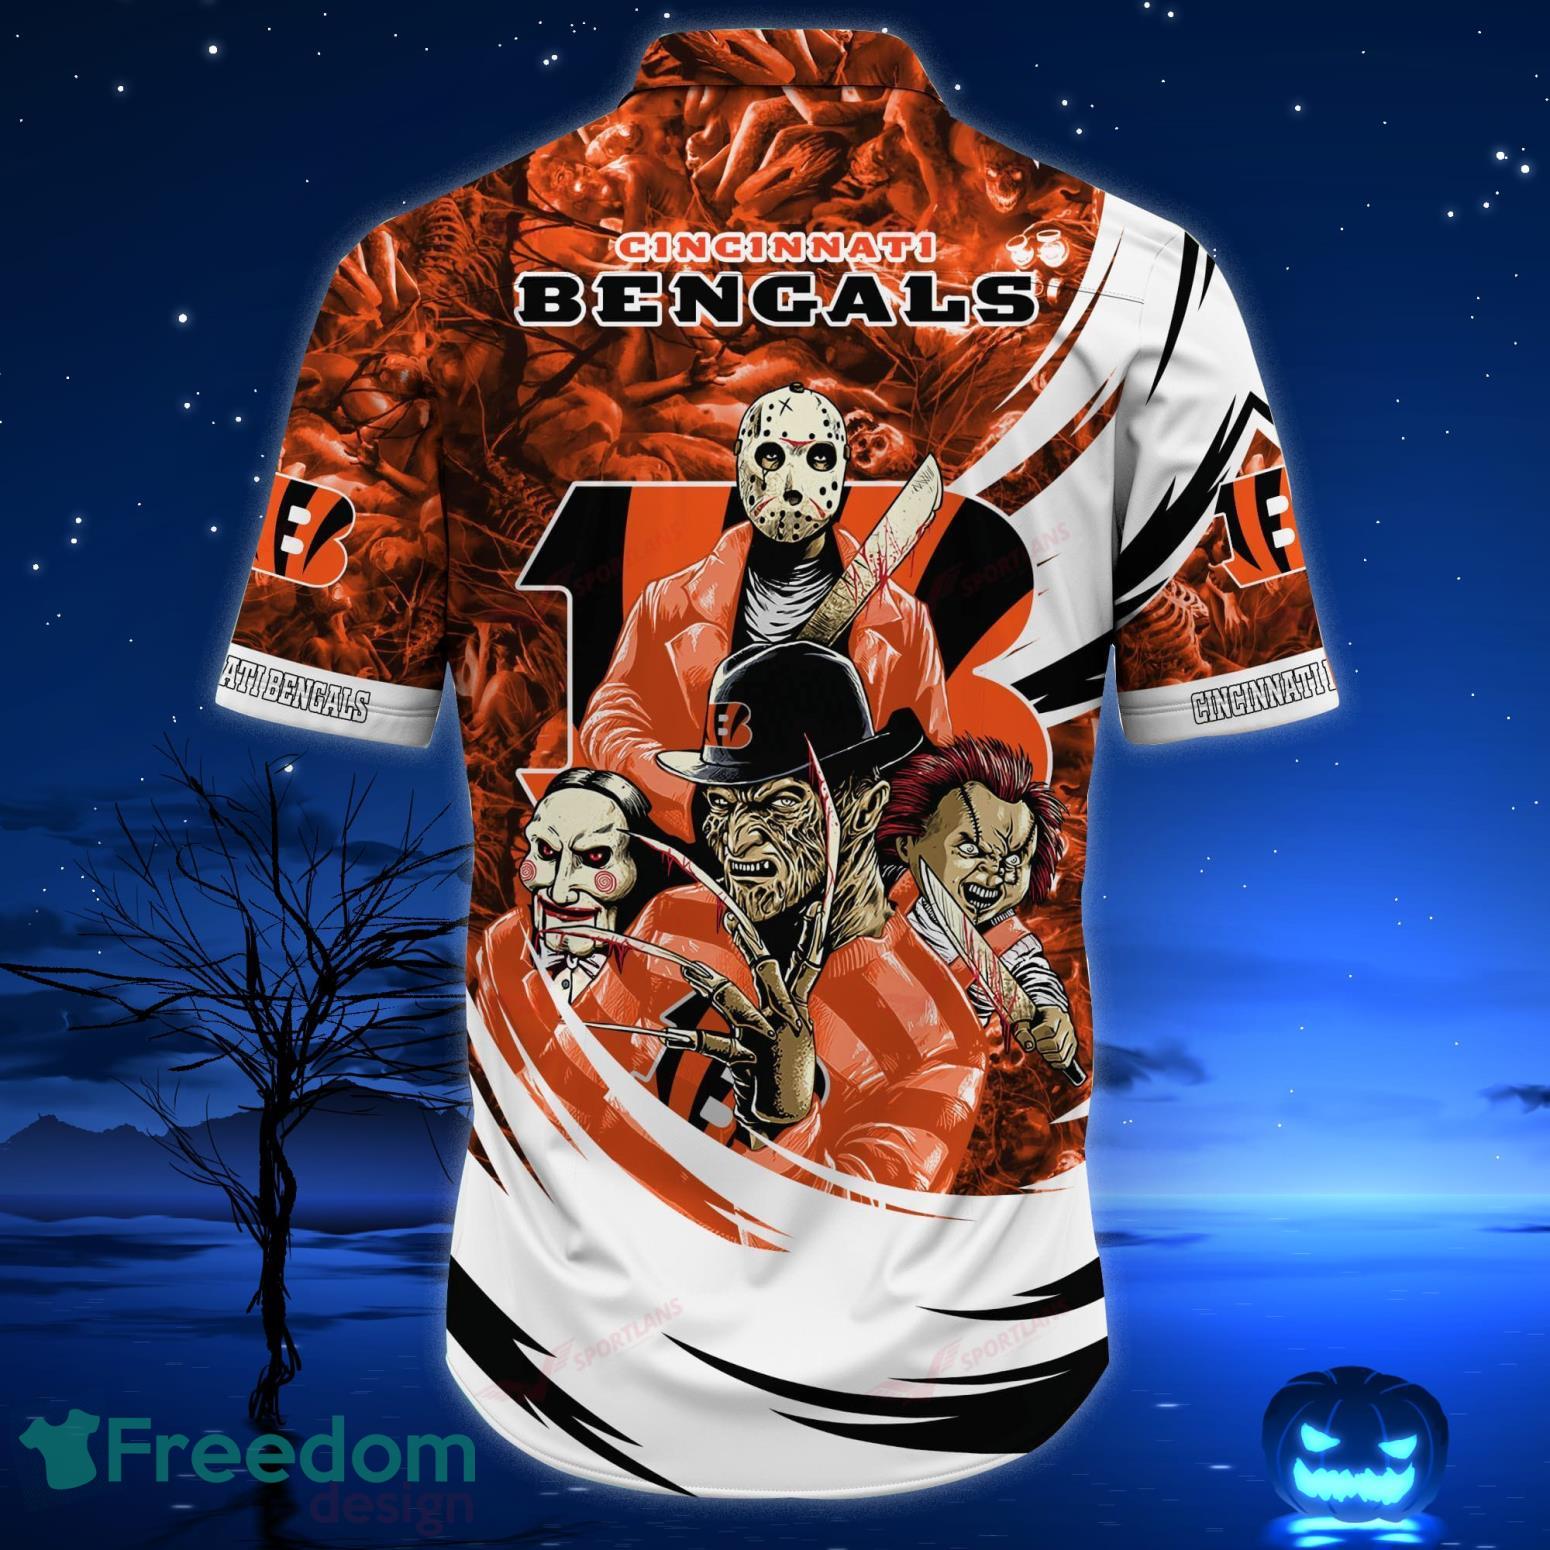 Cincinnati Bengals Apparel, Bengals Gear, Cincinnati Bengals Shop